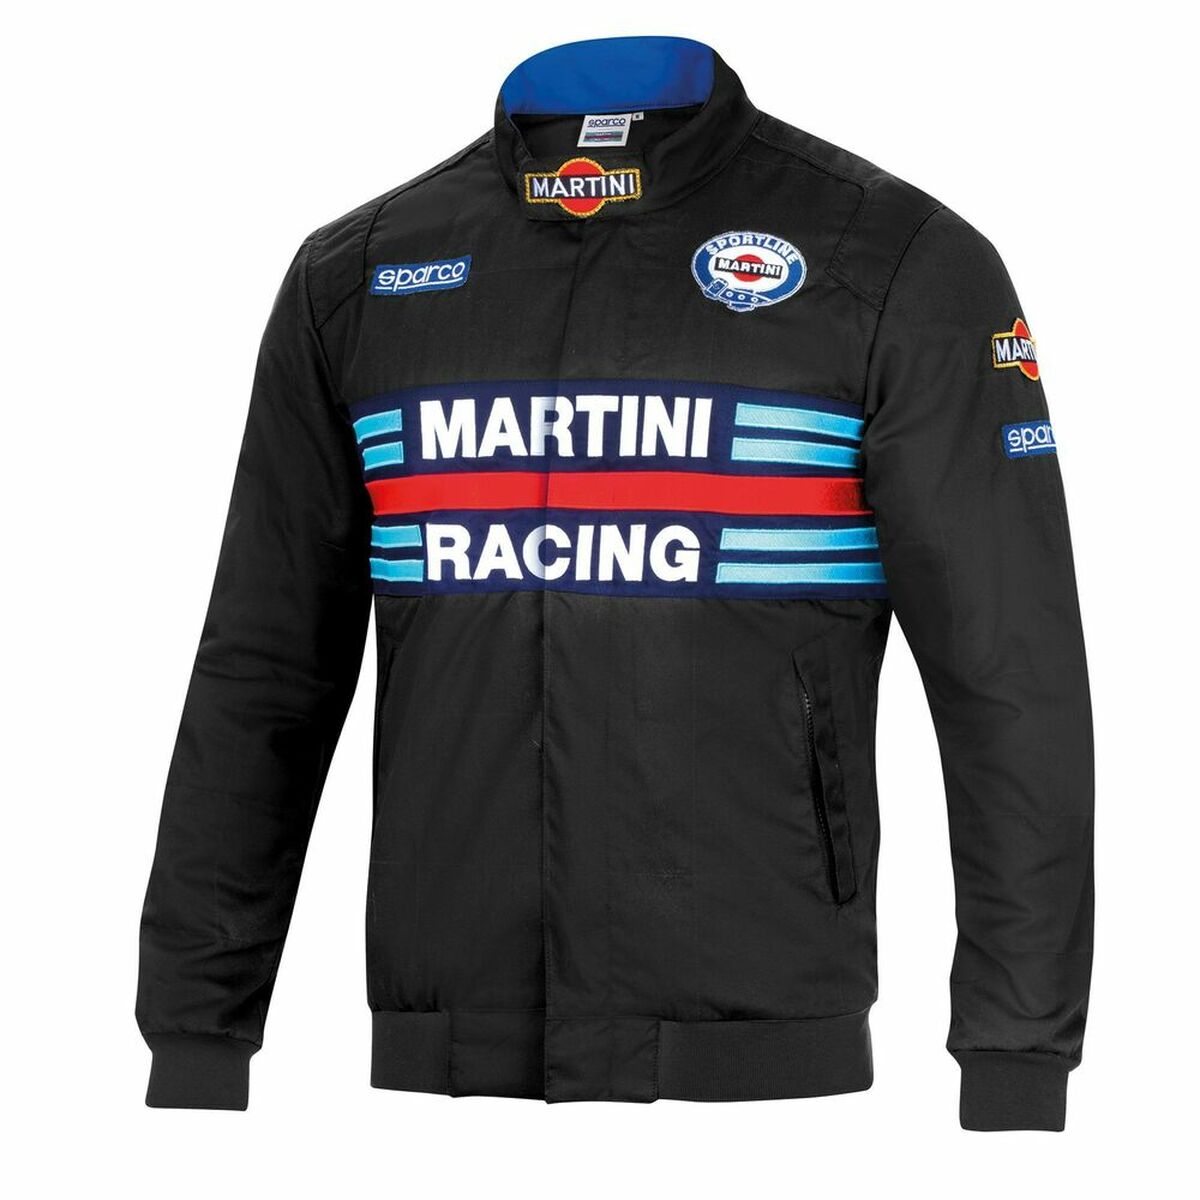 Veste pour adultes Sparco Martini Racing Noir M